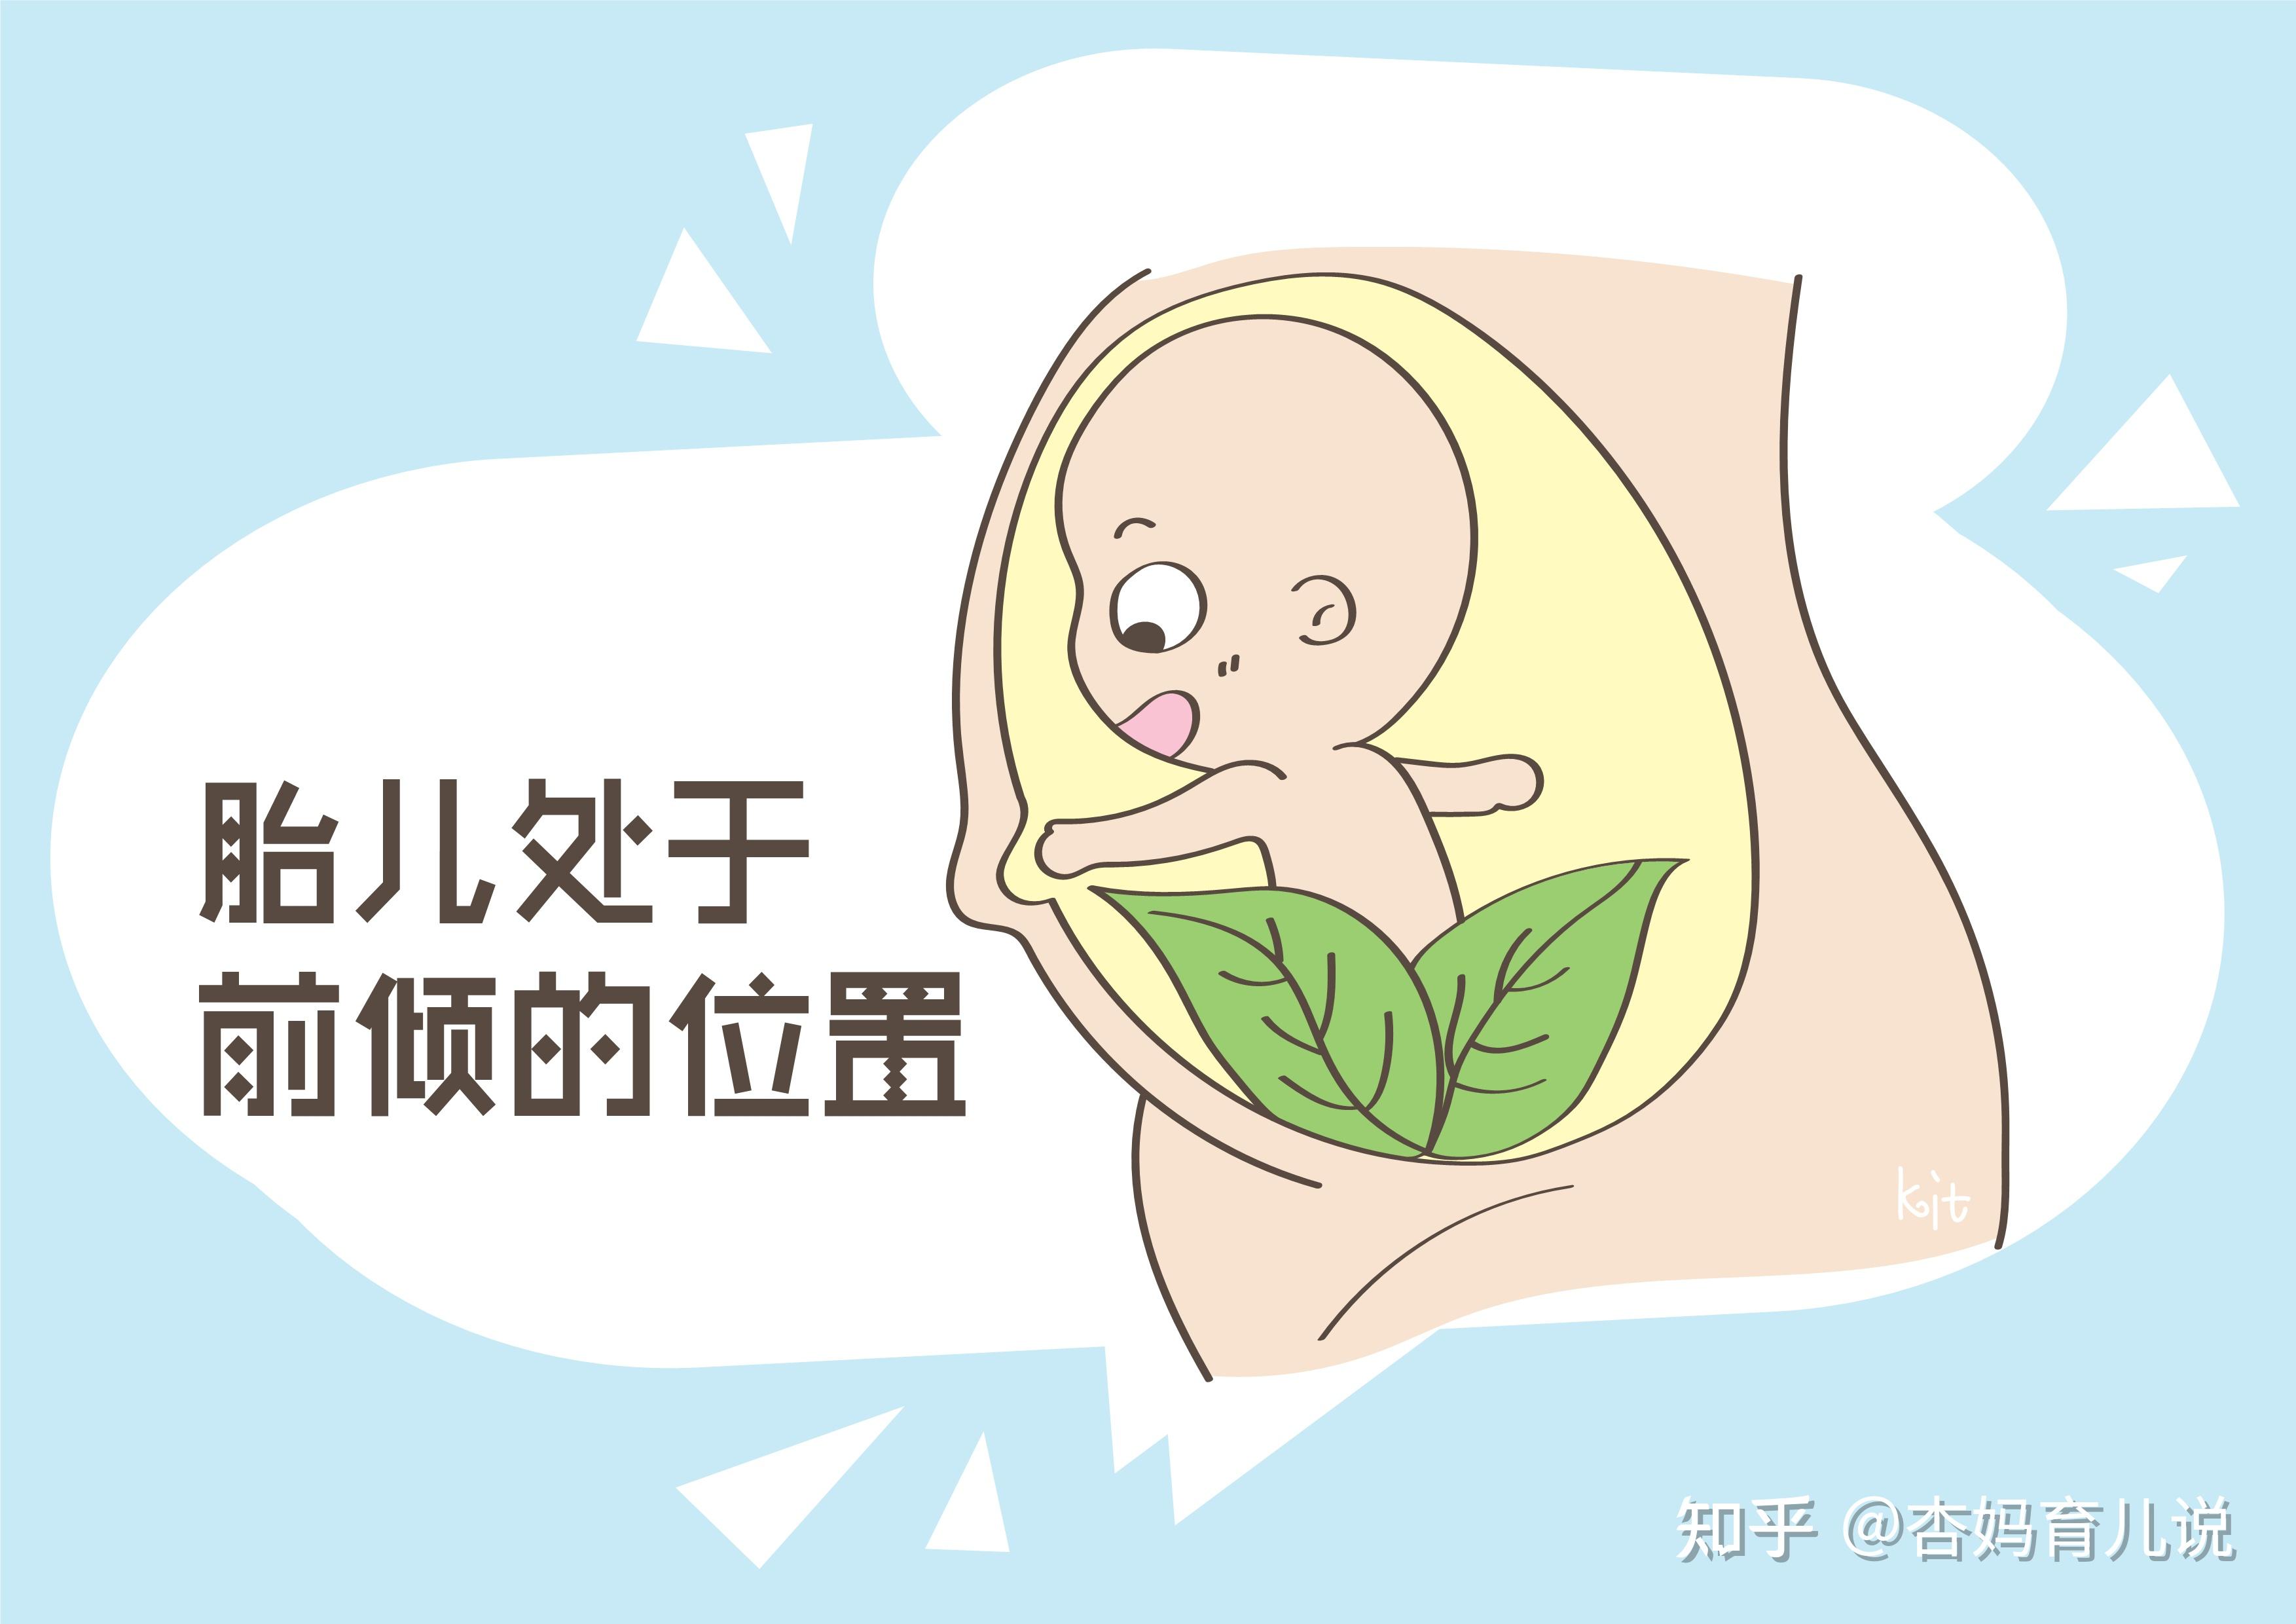 新生婴儿肚脐怎么护理_新生儿肚脐化脓图片 - 随意云